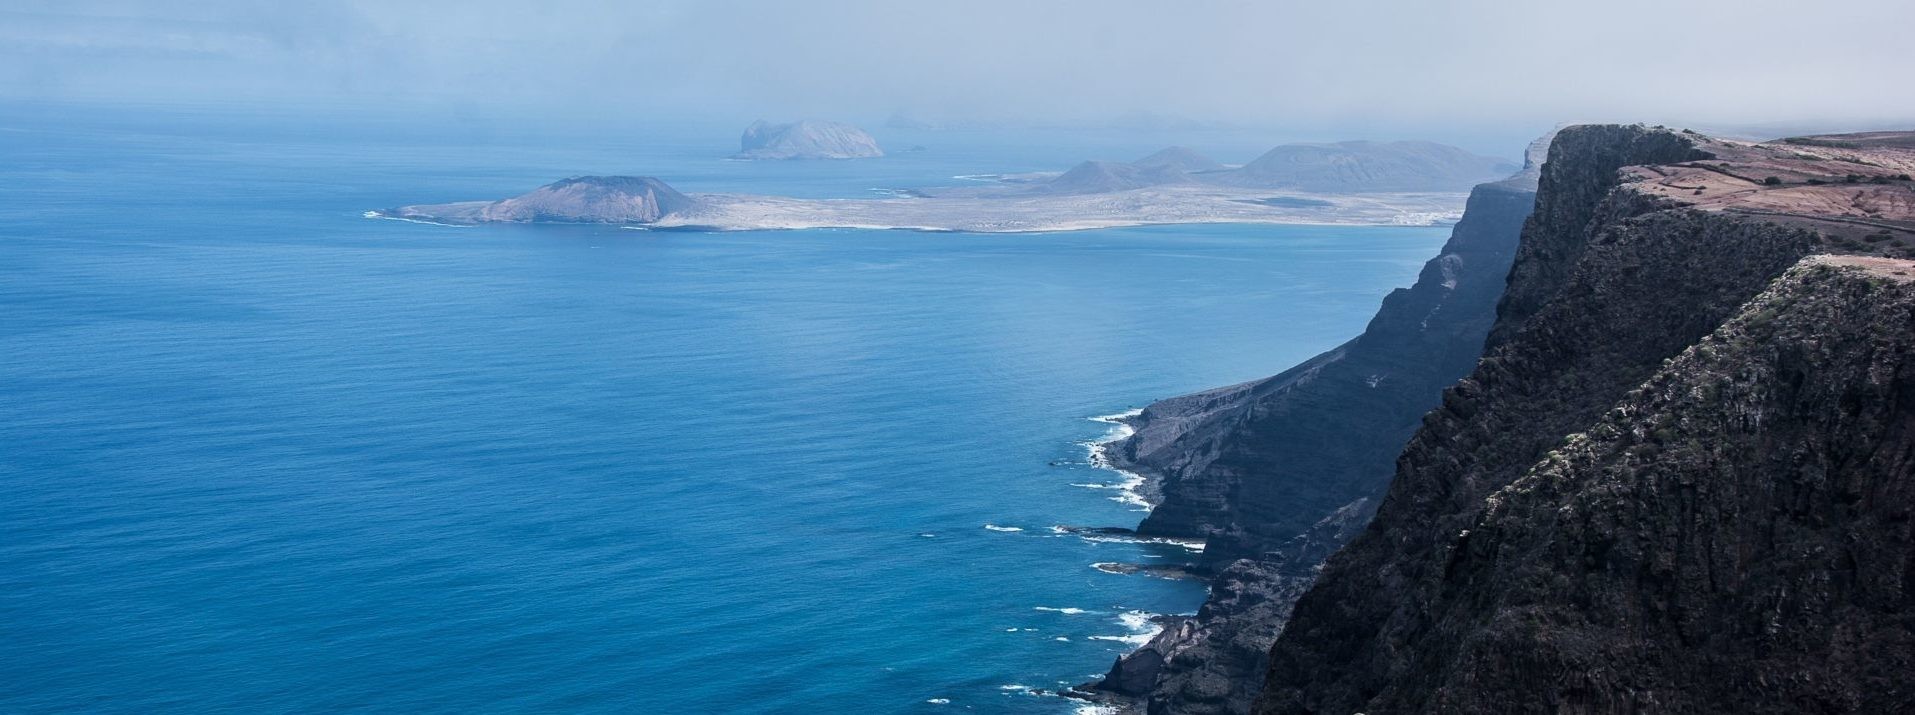 In barca a vela alle Isole Canarie: Tenerife e Lanzarote